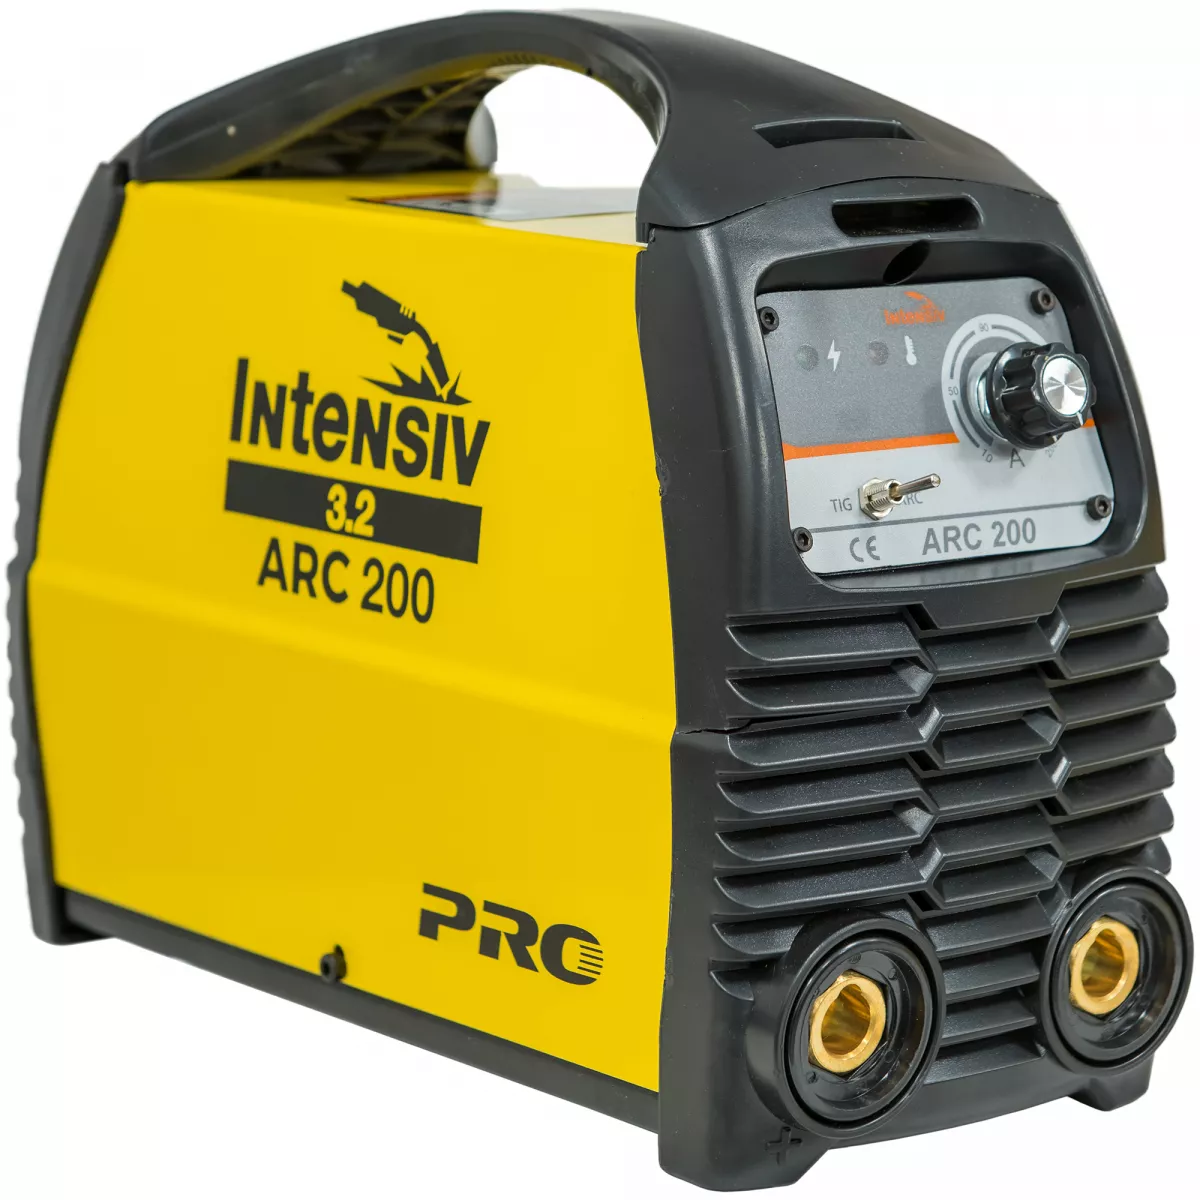 ARC 200 VRD - Aparat de sudura invertor Intensiv, [],bricolajmarket.ro